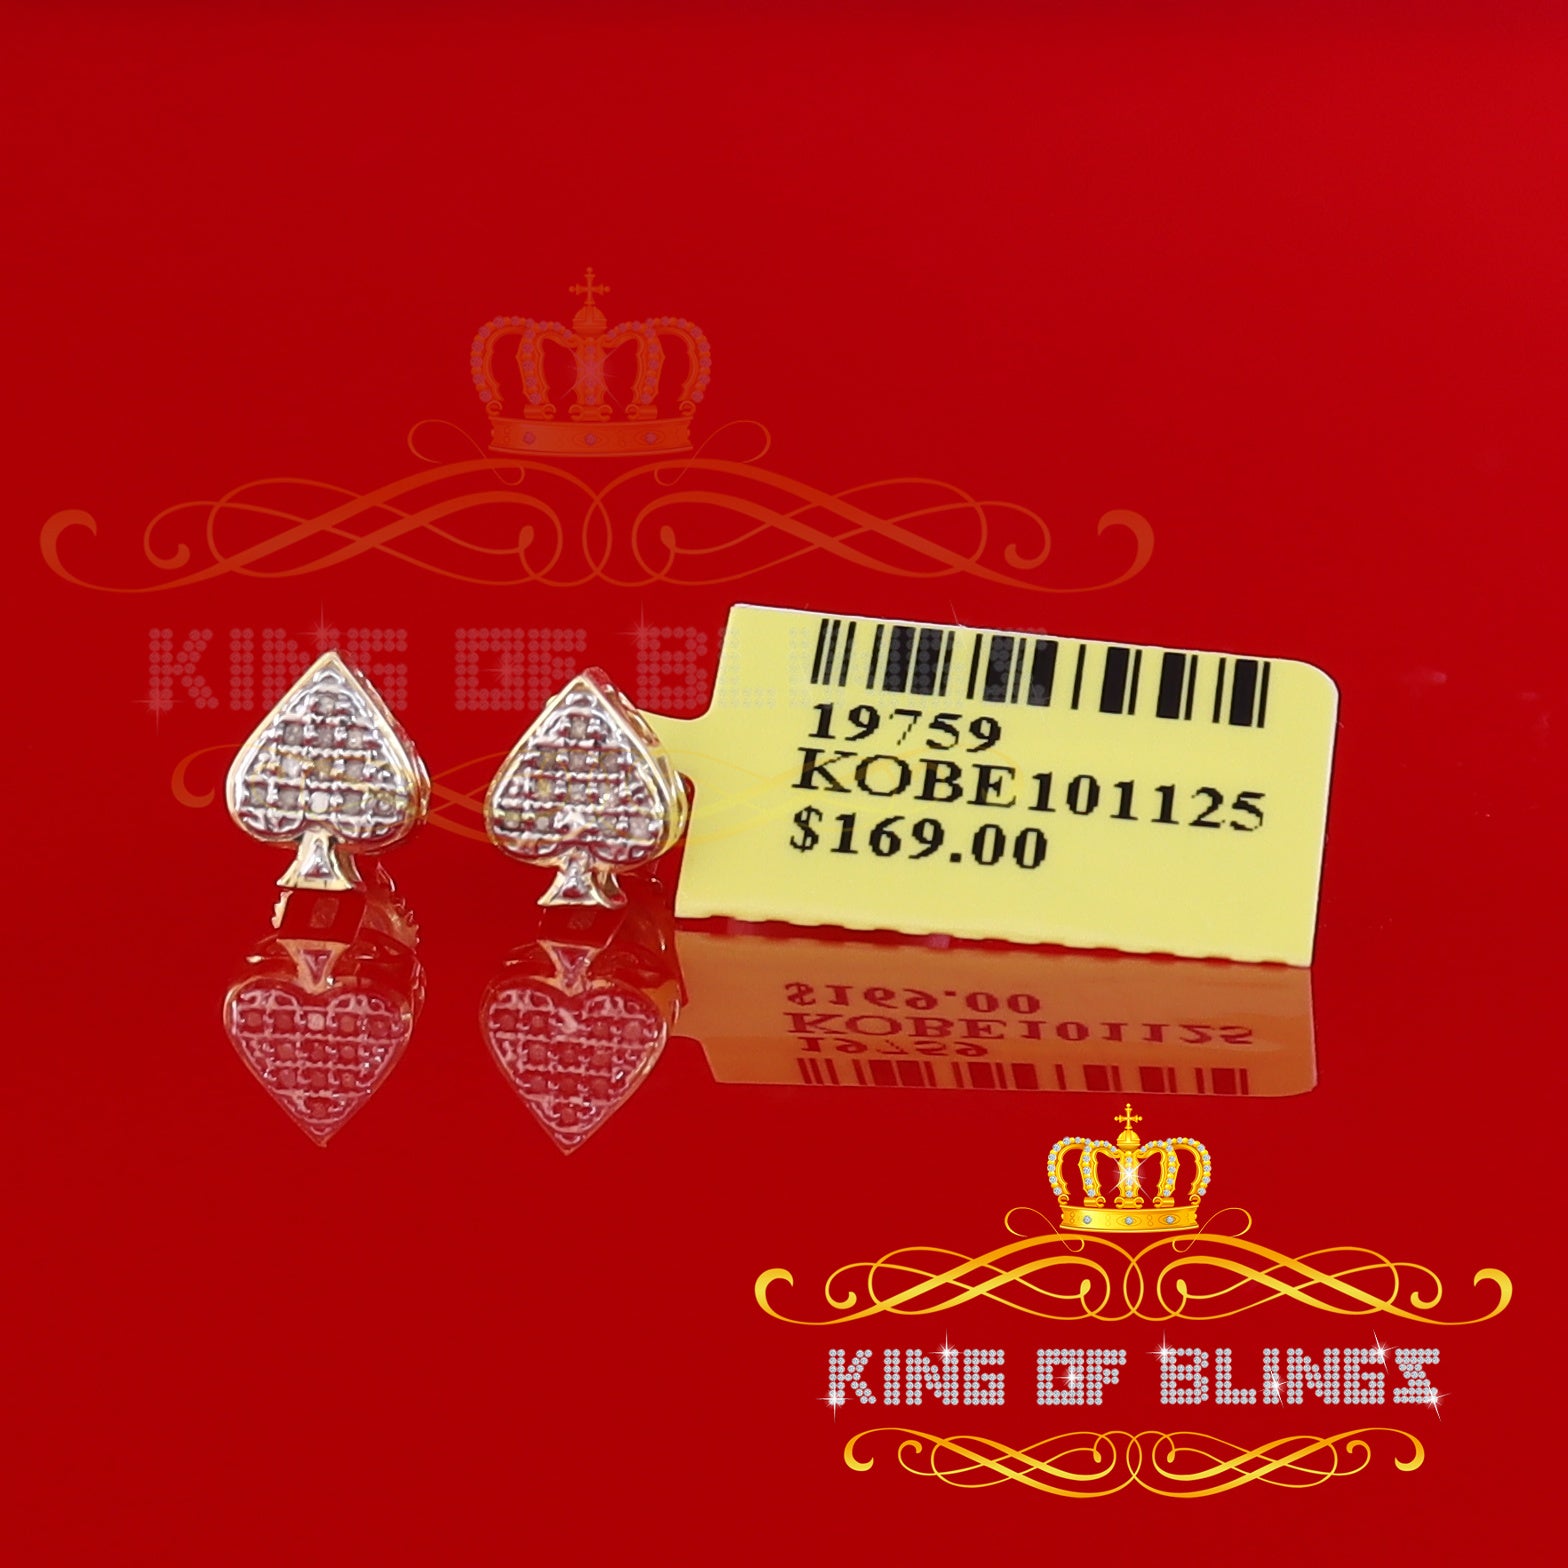 King of Blings-925 Sterling Silver Yellow 0.05ct Diamond For Women's & Men's Stud Heart Earring KING OF BLINGS